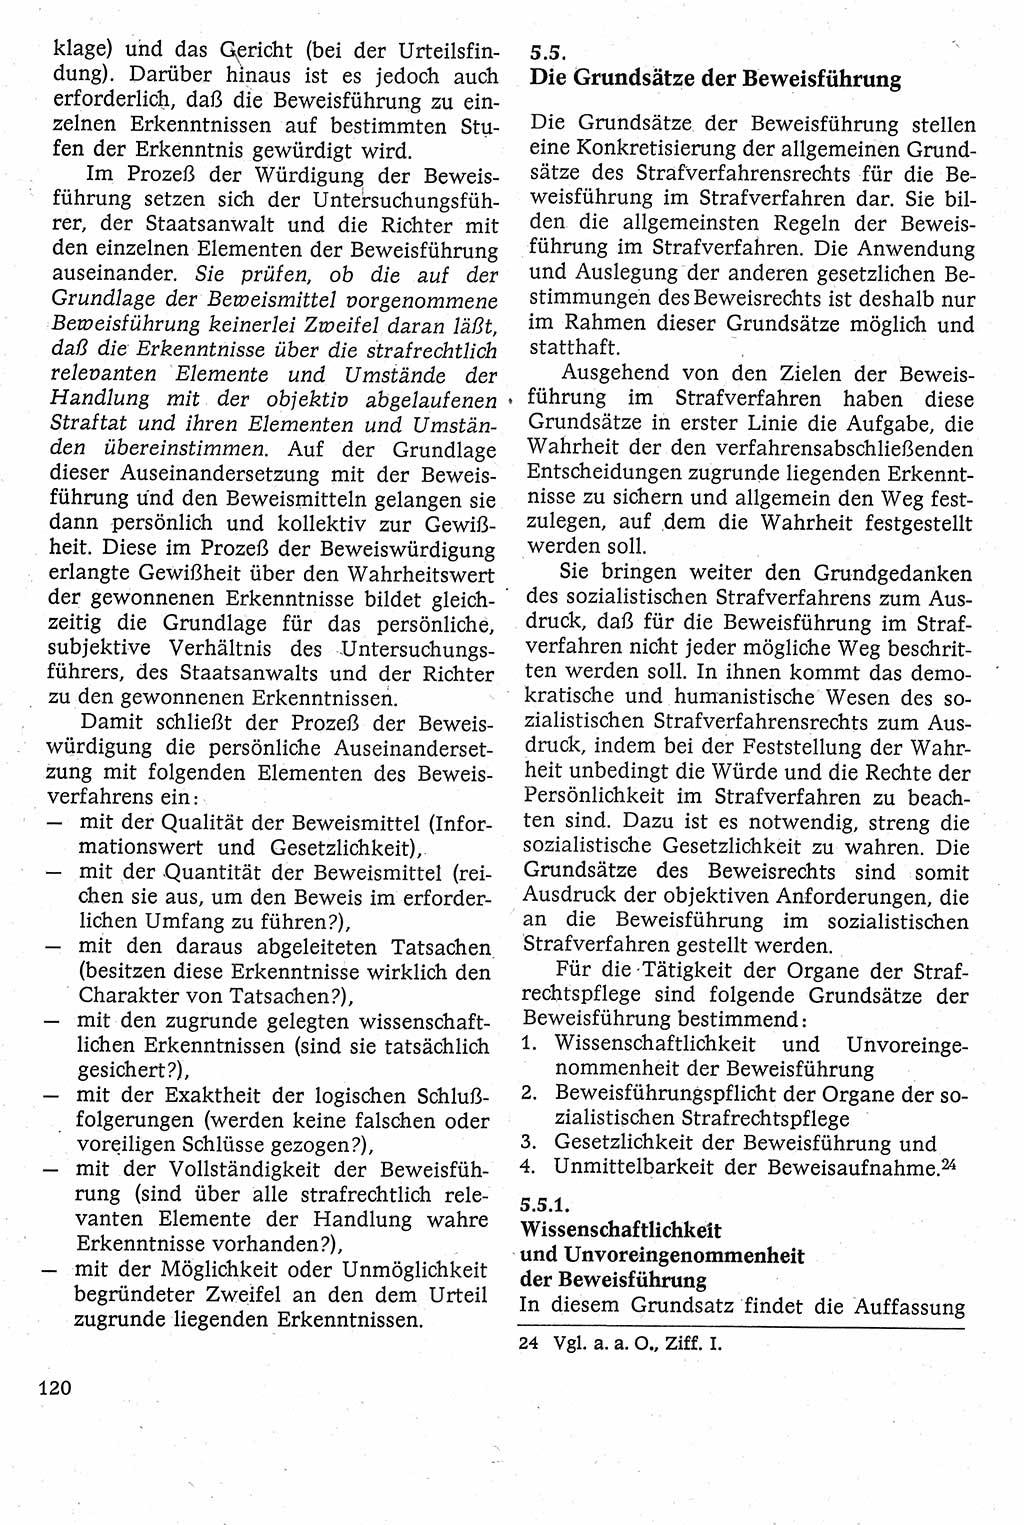 Strafverfahrensrecht [Deutsche Demokratische Republik (DDR)], Lehrbuch 1982, Seite 120 (Strafverf.-R. DDR Lb. 1982, S. 120)